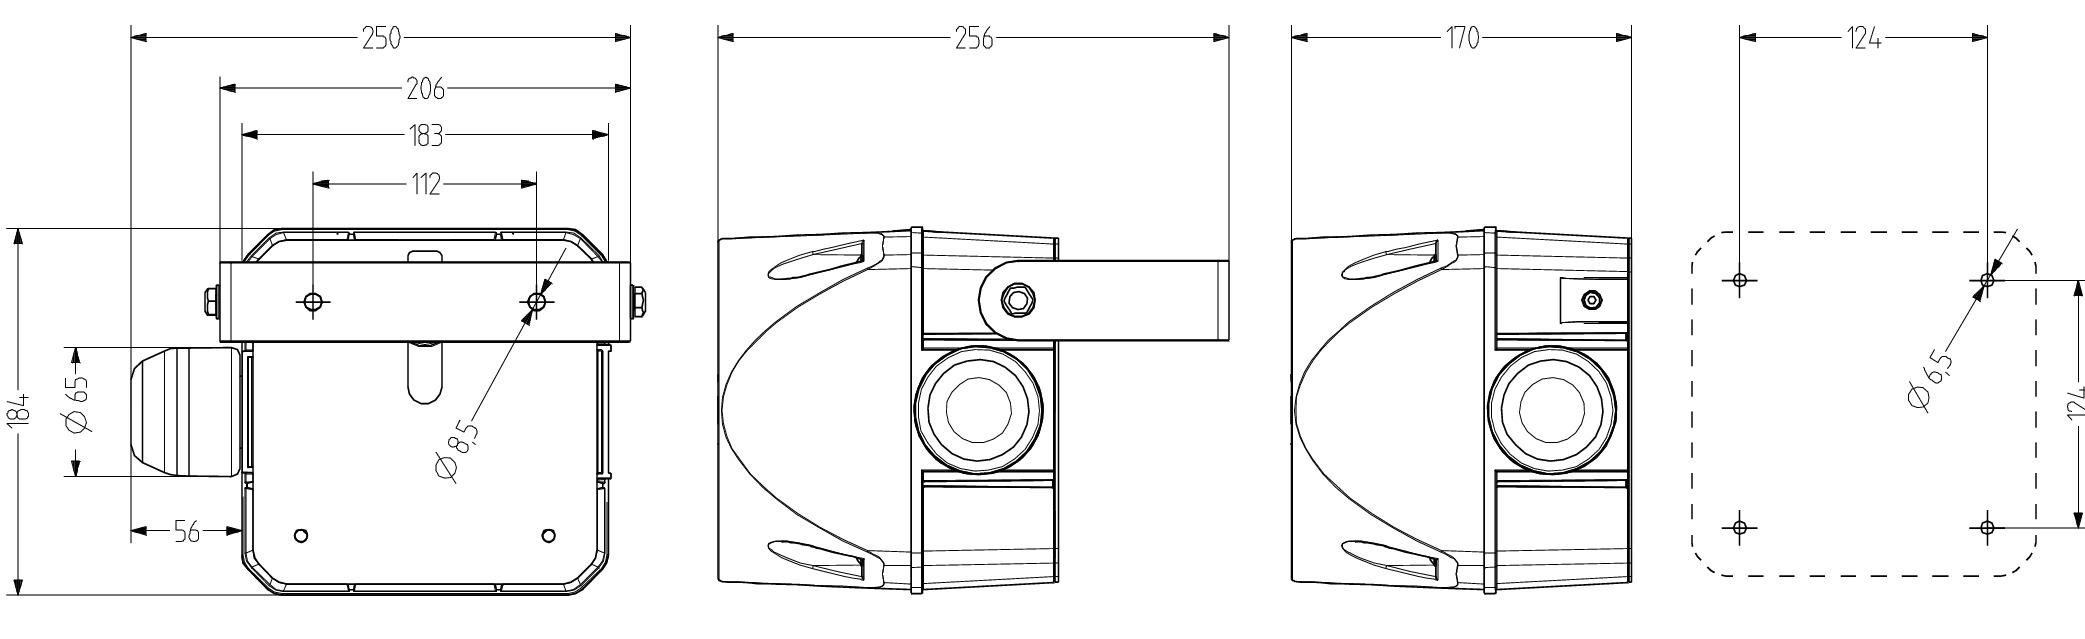 ADL многотональная сирена со встроенным светодиодным индикатором